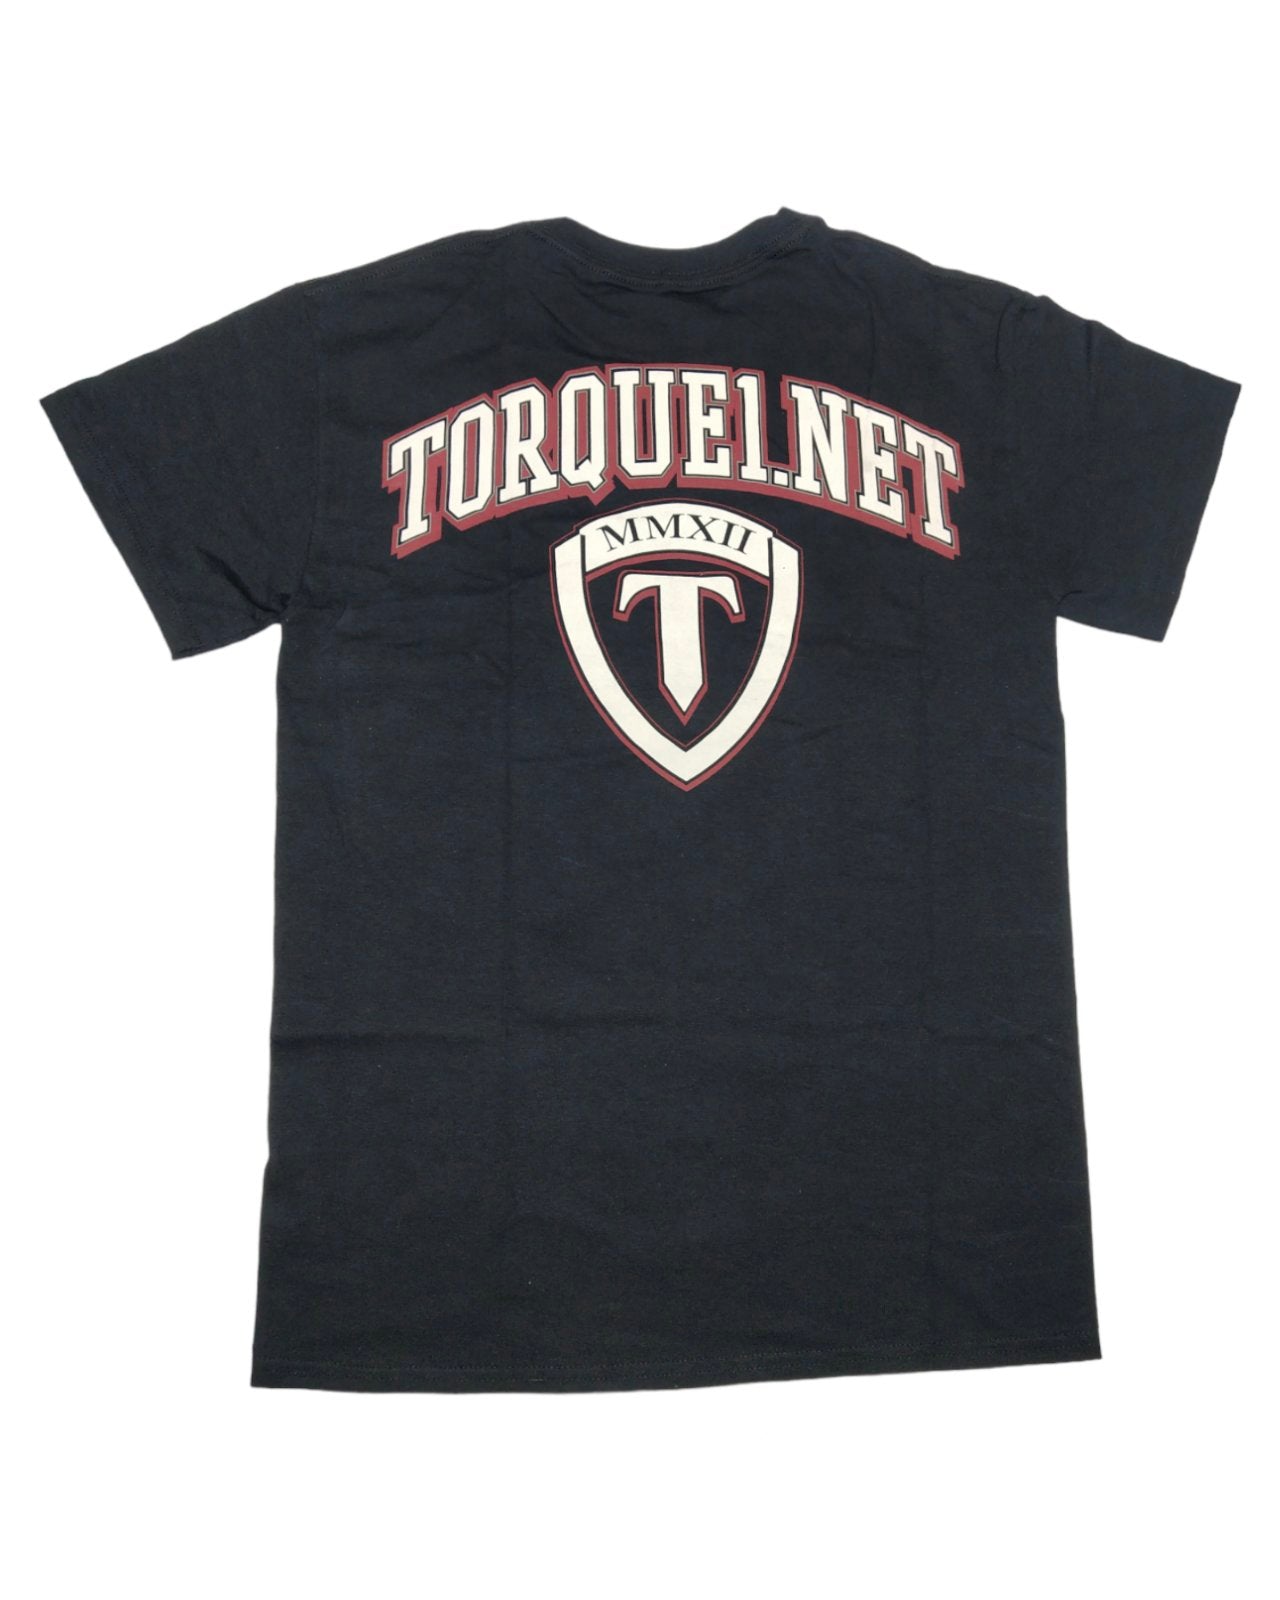 TORQUE MMA T-Shirt